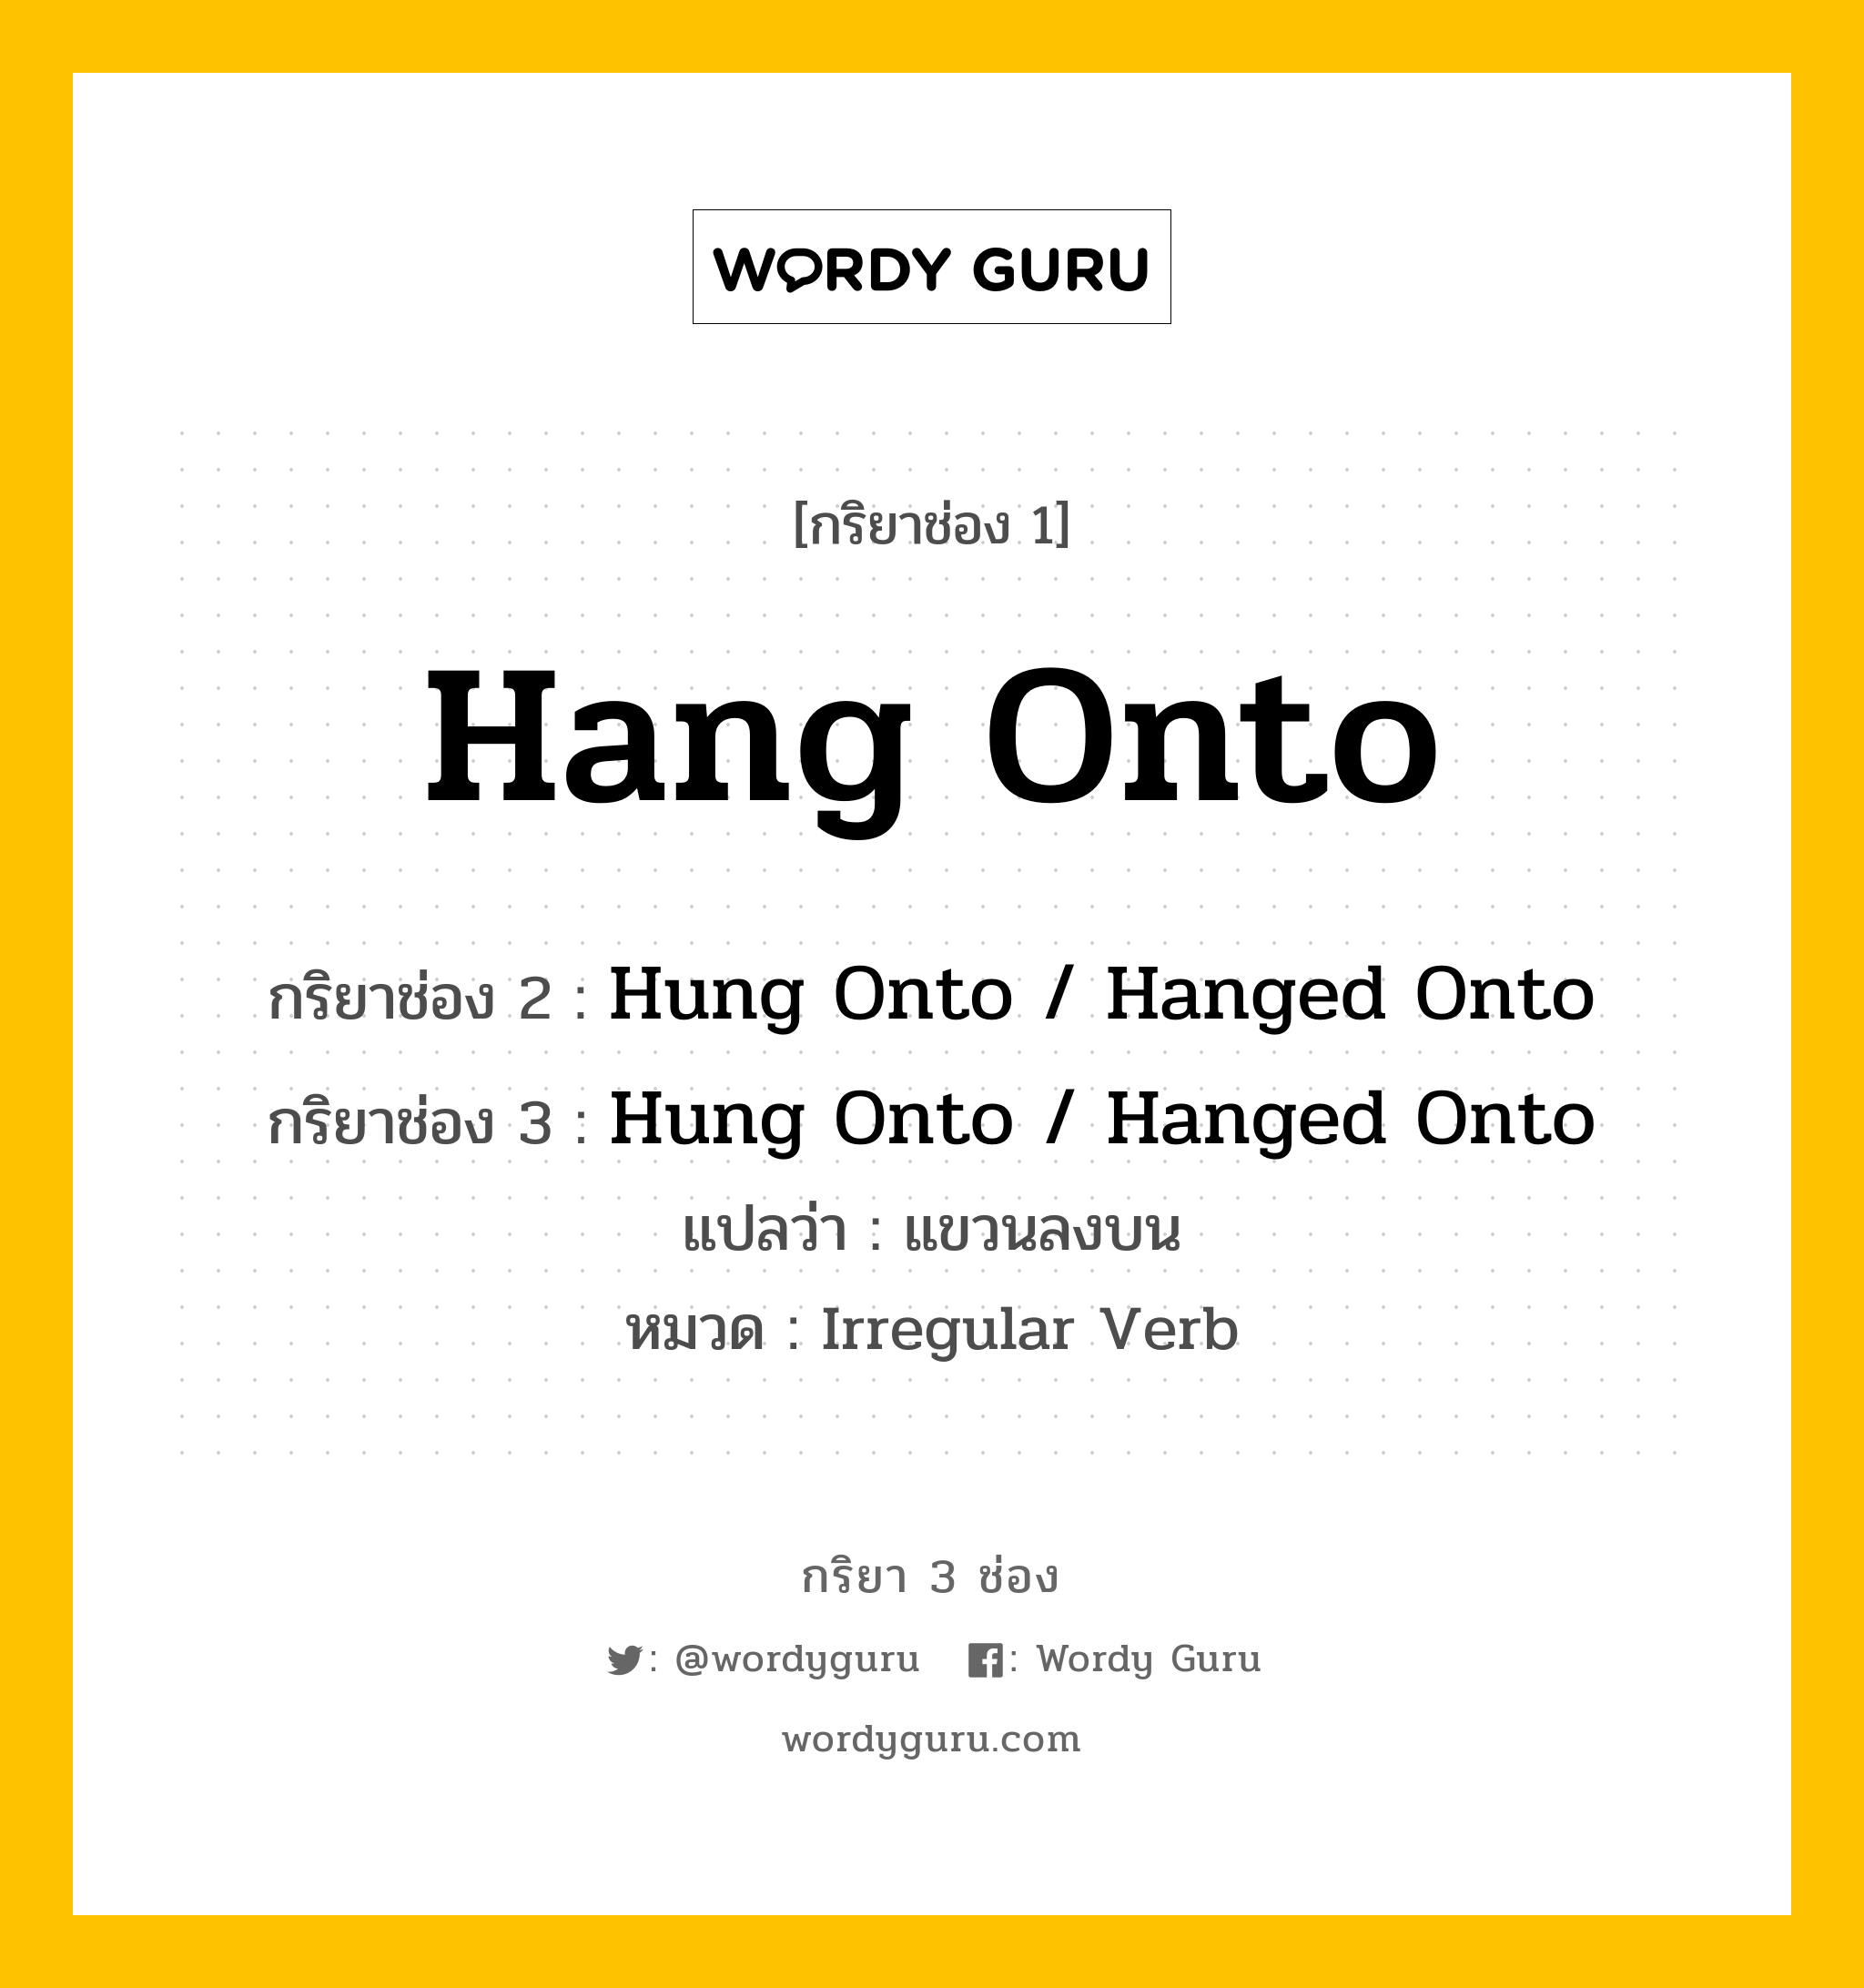 กริยา 3 ช่อง ของ Hang Onto คืออะไร?, กริยาช่อง 1 Hang Onto กริยาช่อง 2 Hung Onto / Hanged Onto กริยาช่อง 3 Hung Onto / Hanged Onto แปลว่า แขวนลงบน หมวด Irregular Verb หมวด Irregular Verb